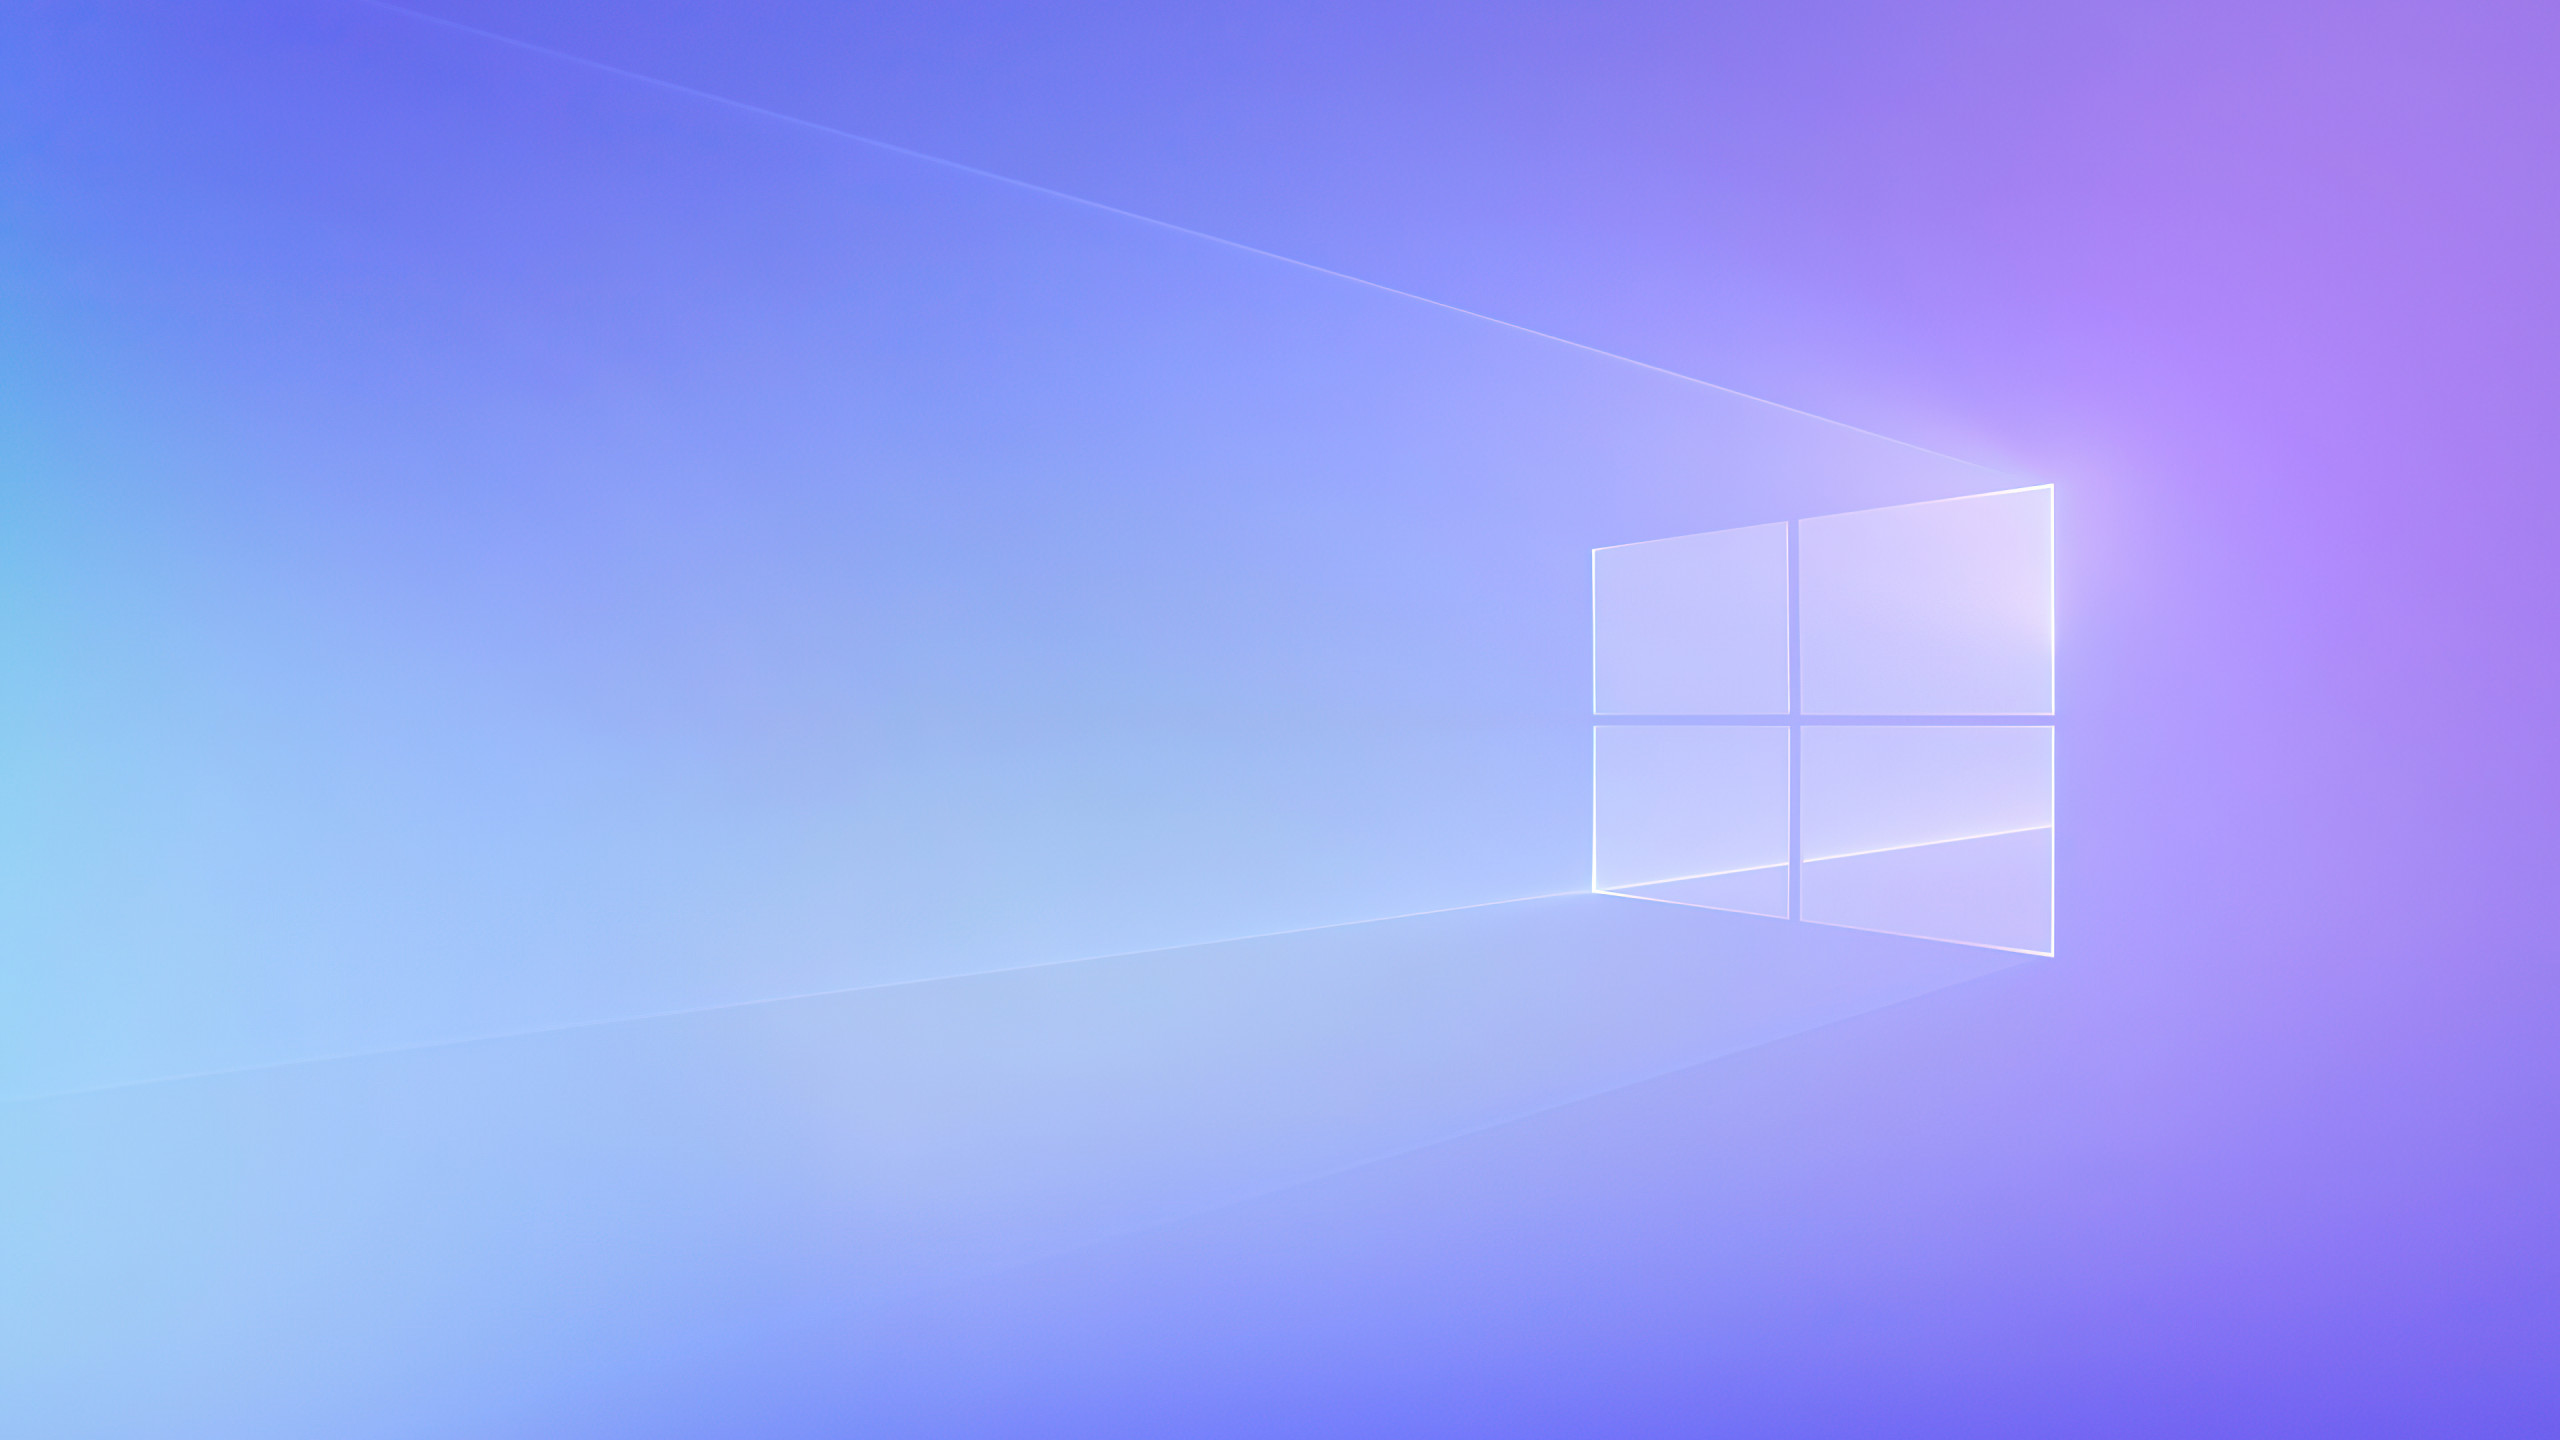 Hình nền Windows 365 là một trong những hình nền đẹp và độc đáo nhất trên thị trường hiện nay. Với các hiệu ứng động tuyệt vời cùng những màu sắc tươi sáng và rực rỡ, bạn sẽ nhận được trải nghiệm tràn đầy năng lượng từ bộ hình nền này.